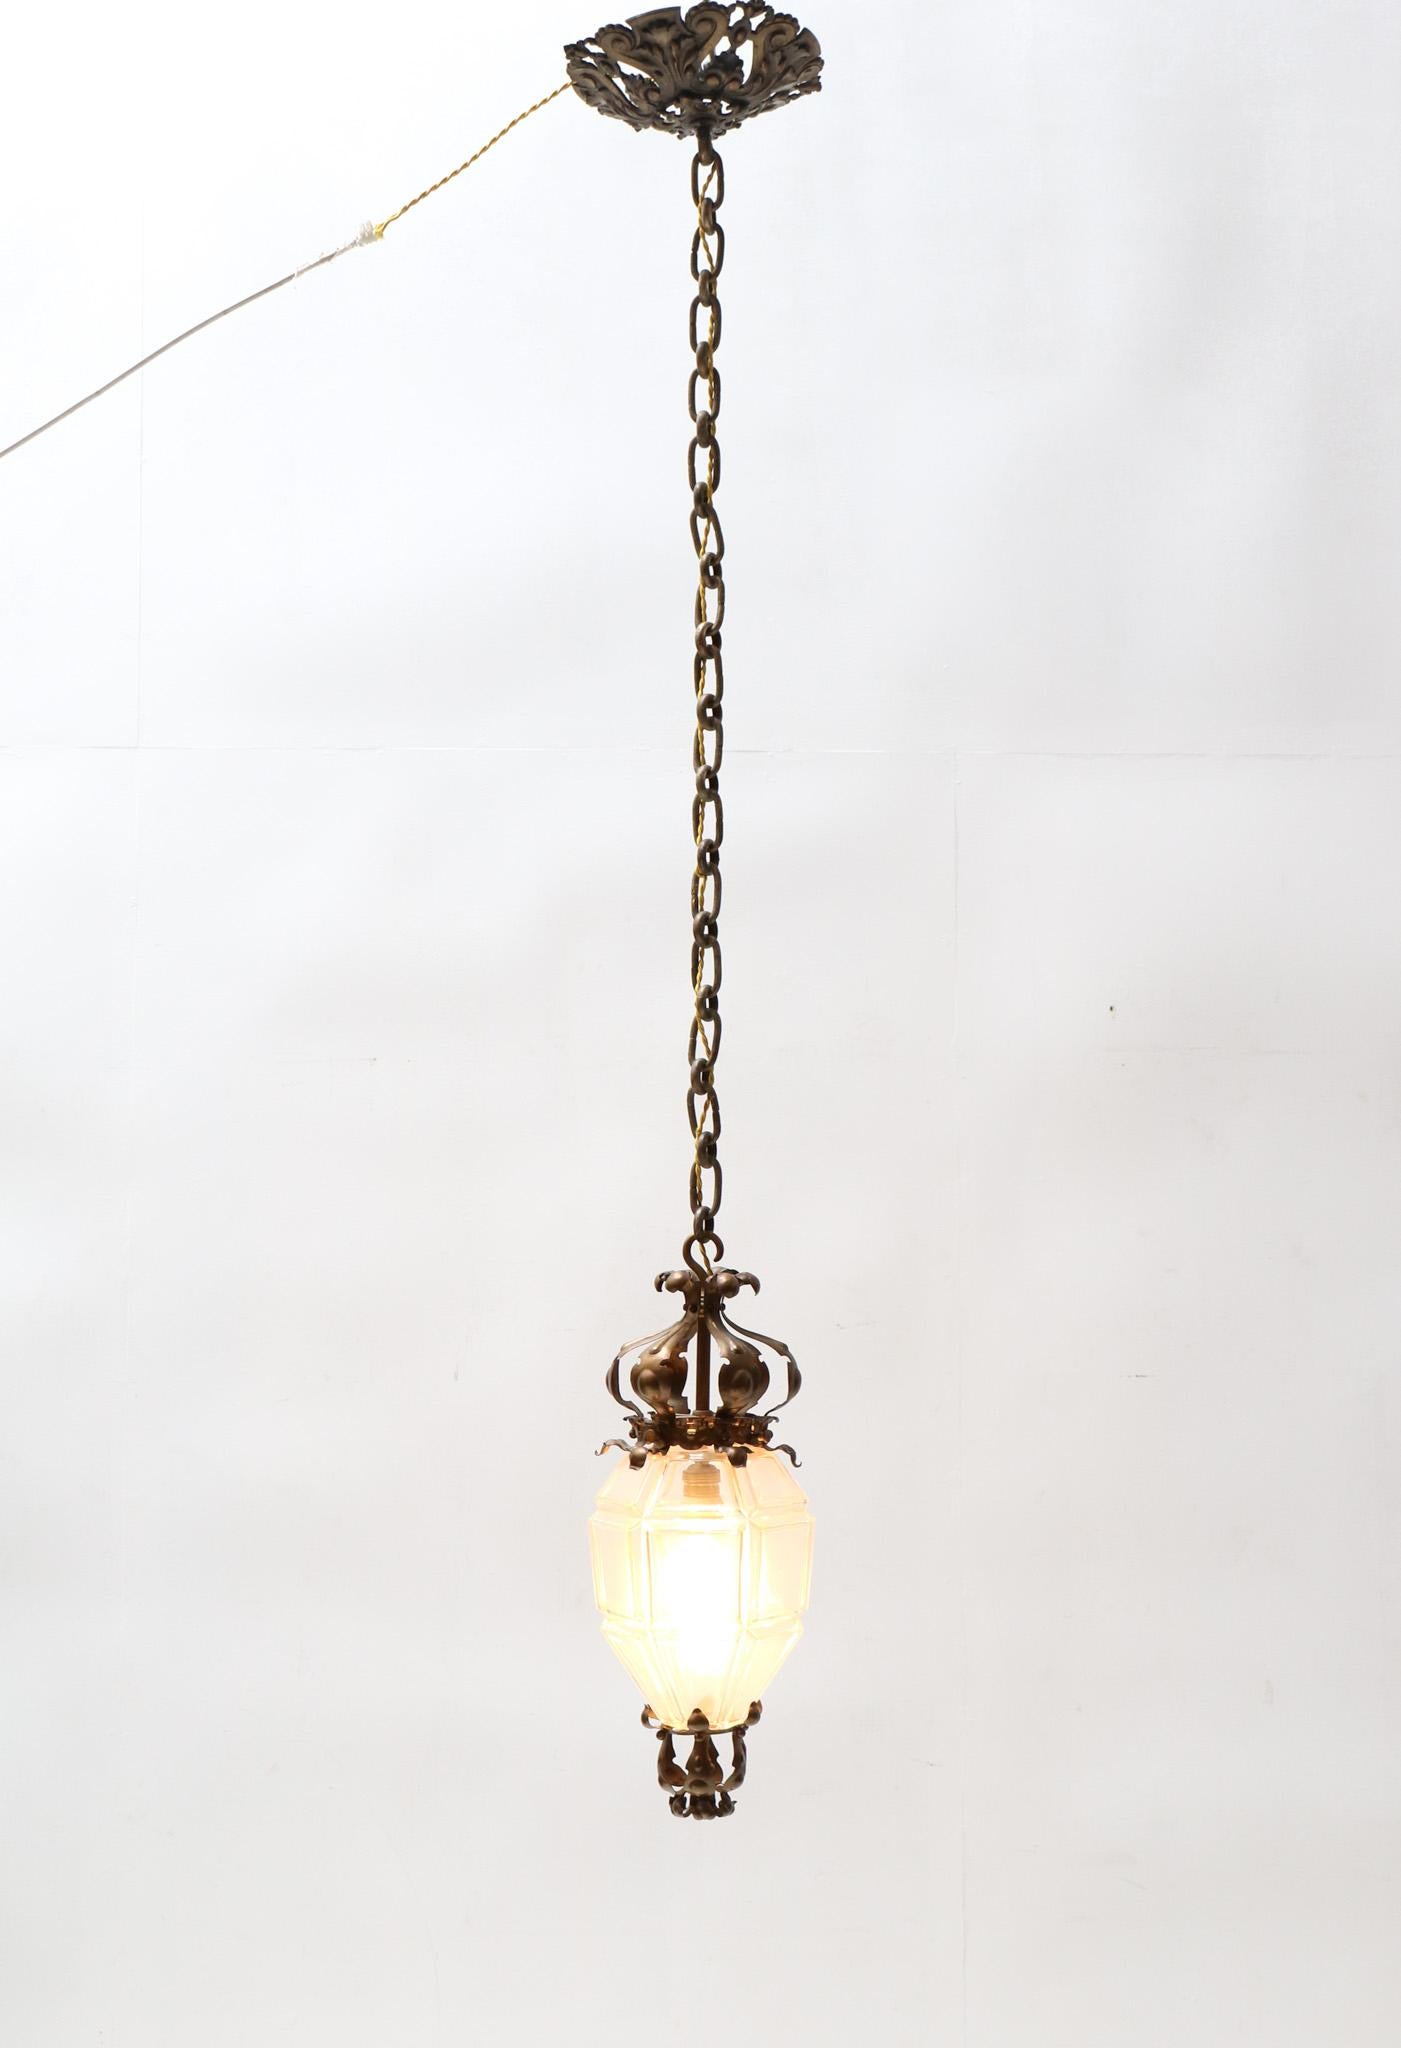 Superbe et rare lanterne Arts & Crafts.
Un design anglais frappant des années 1900.
Cadre et plafond en laiton patiné d'origine avec abat-jour en verre taillé d'origine.
Recâblage avec une douille d'origine pour une ampoule E-27.
Cette magnifique